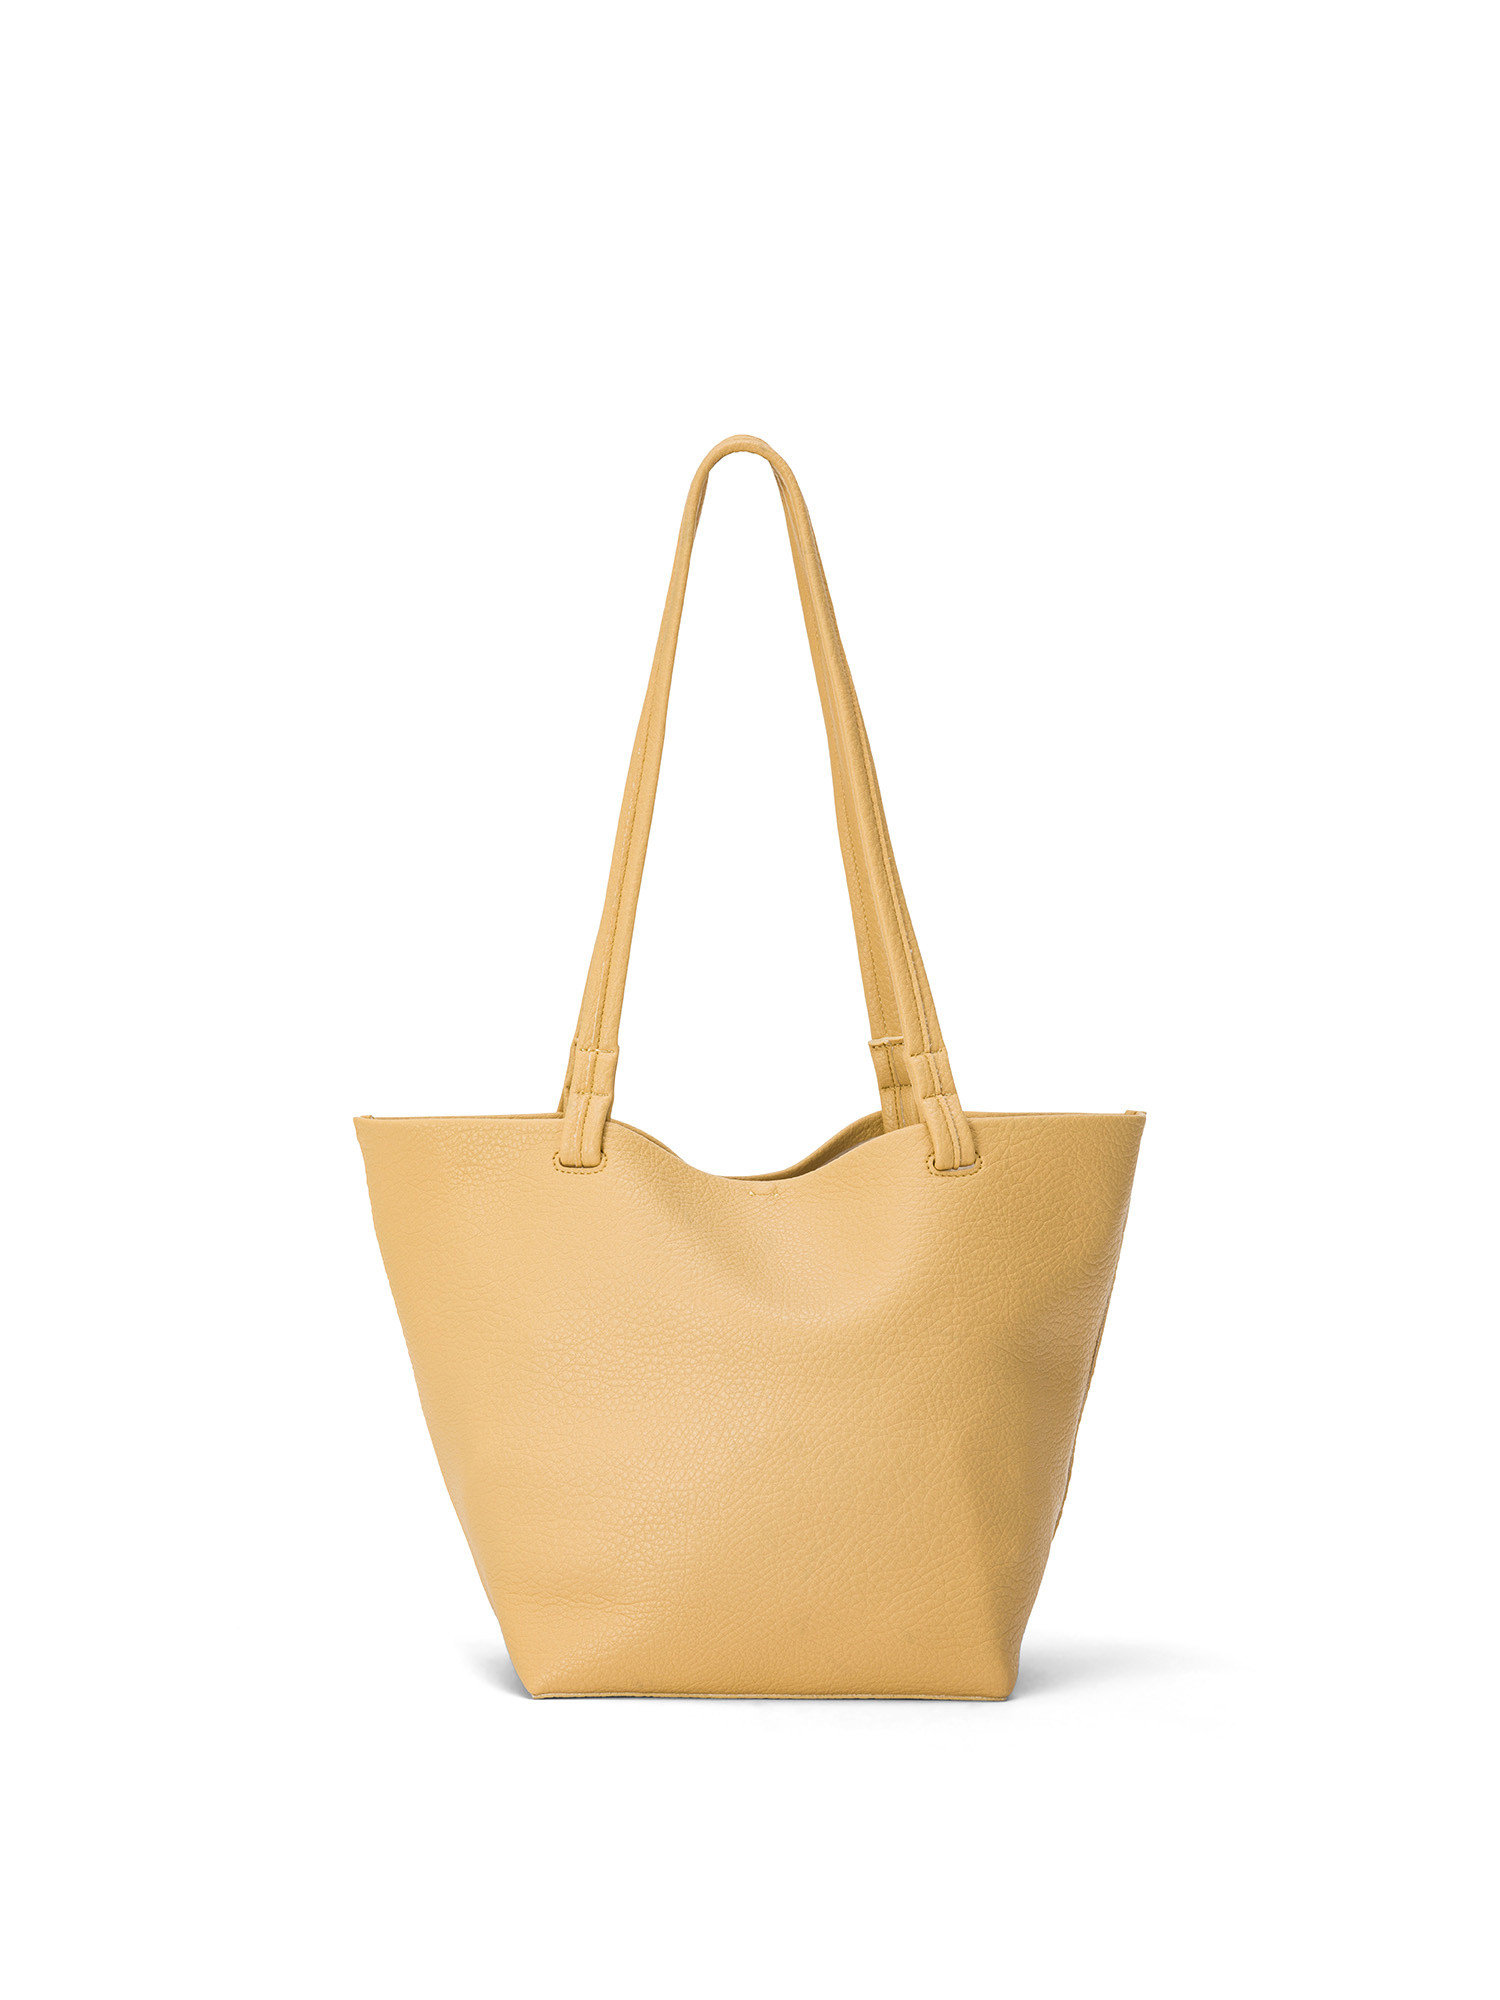 Koan - Shopping bag, Giallo, large image number 0